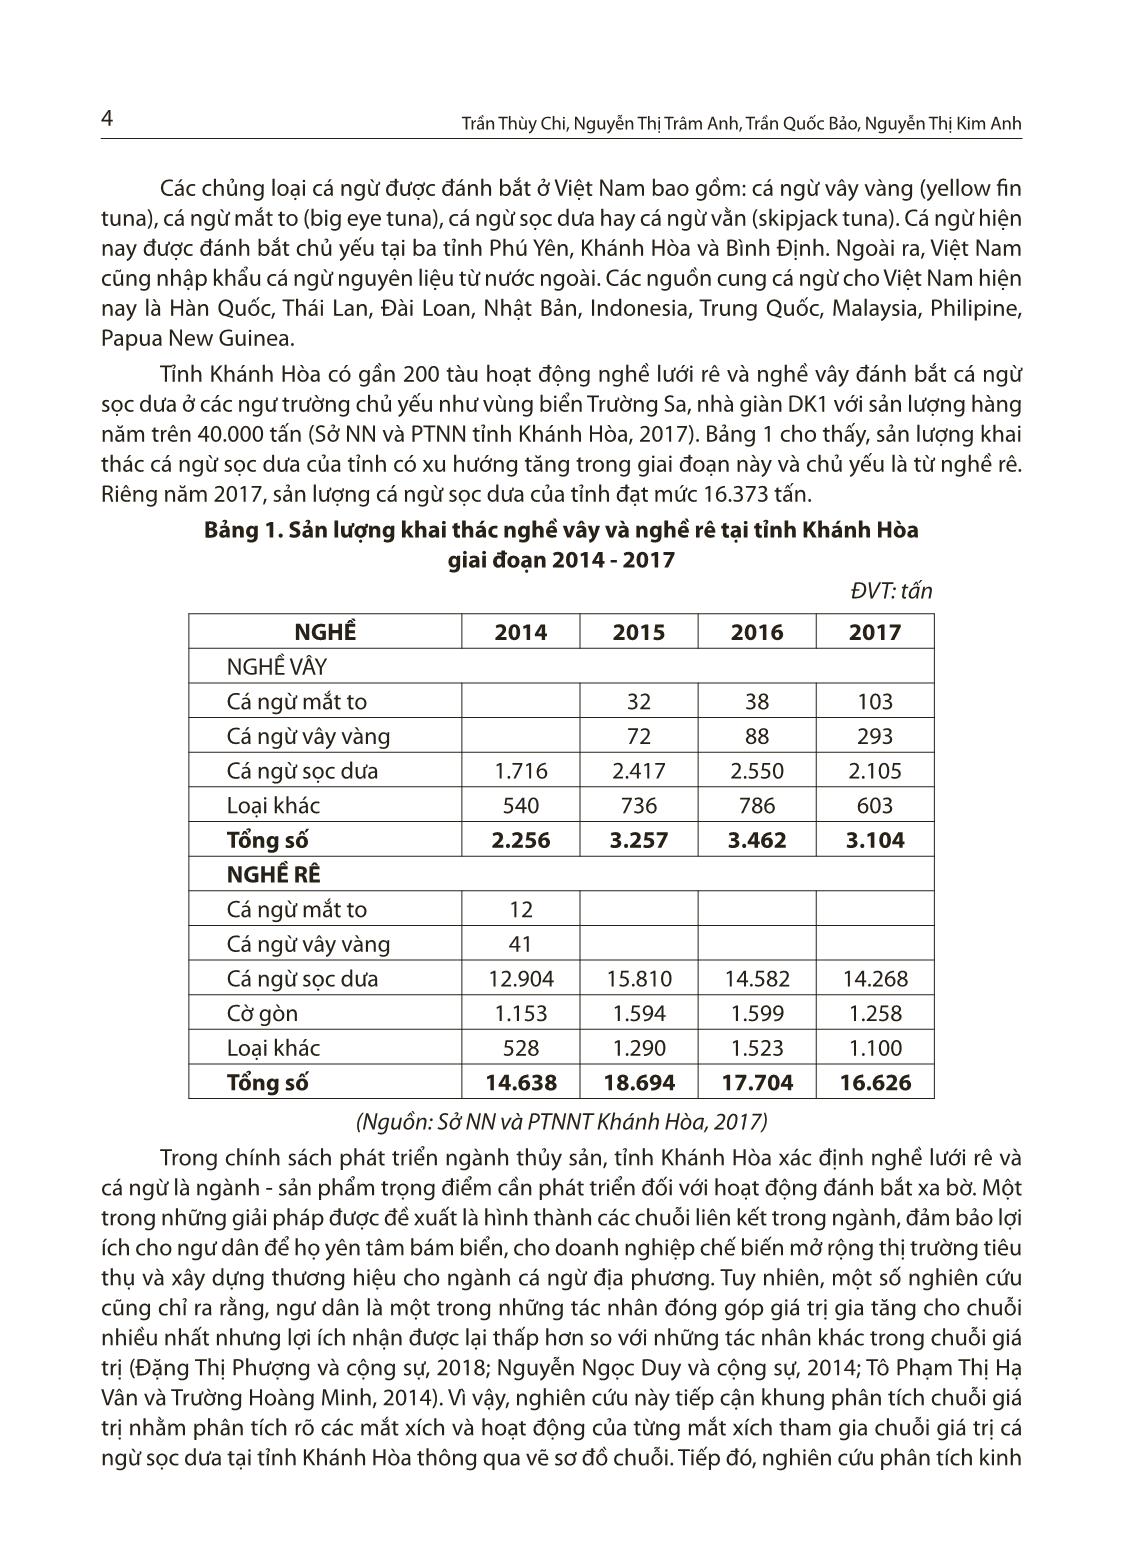 Nghiên cứu chuỗi giá trị cá ngừ sọc dưa tại tỉnh Khánh Hòa trang 2